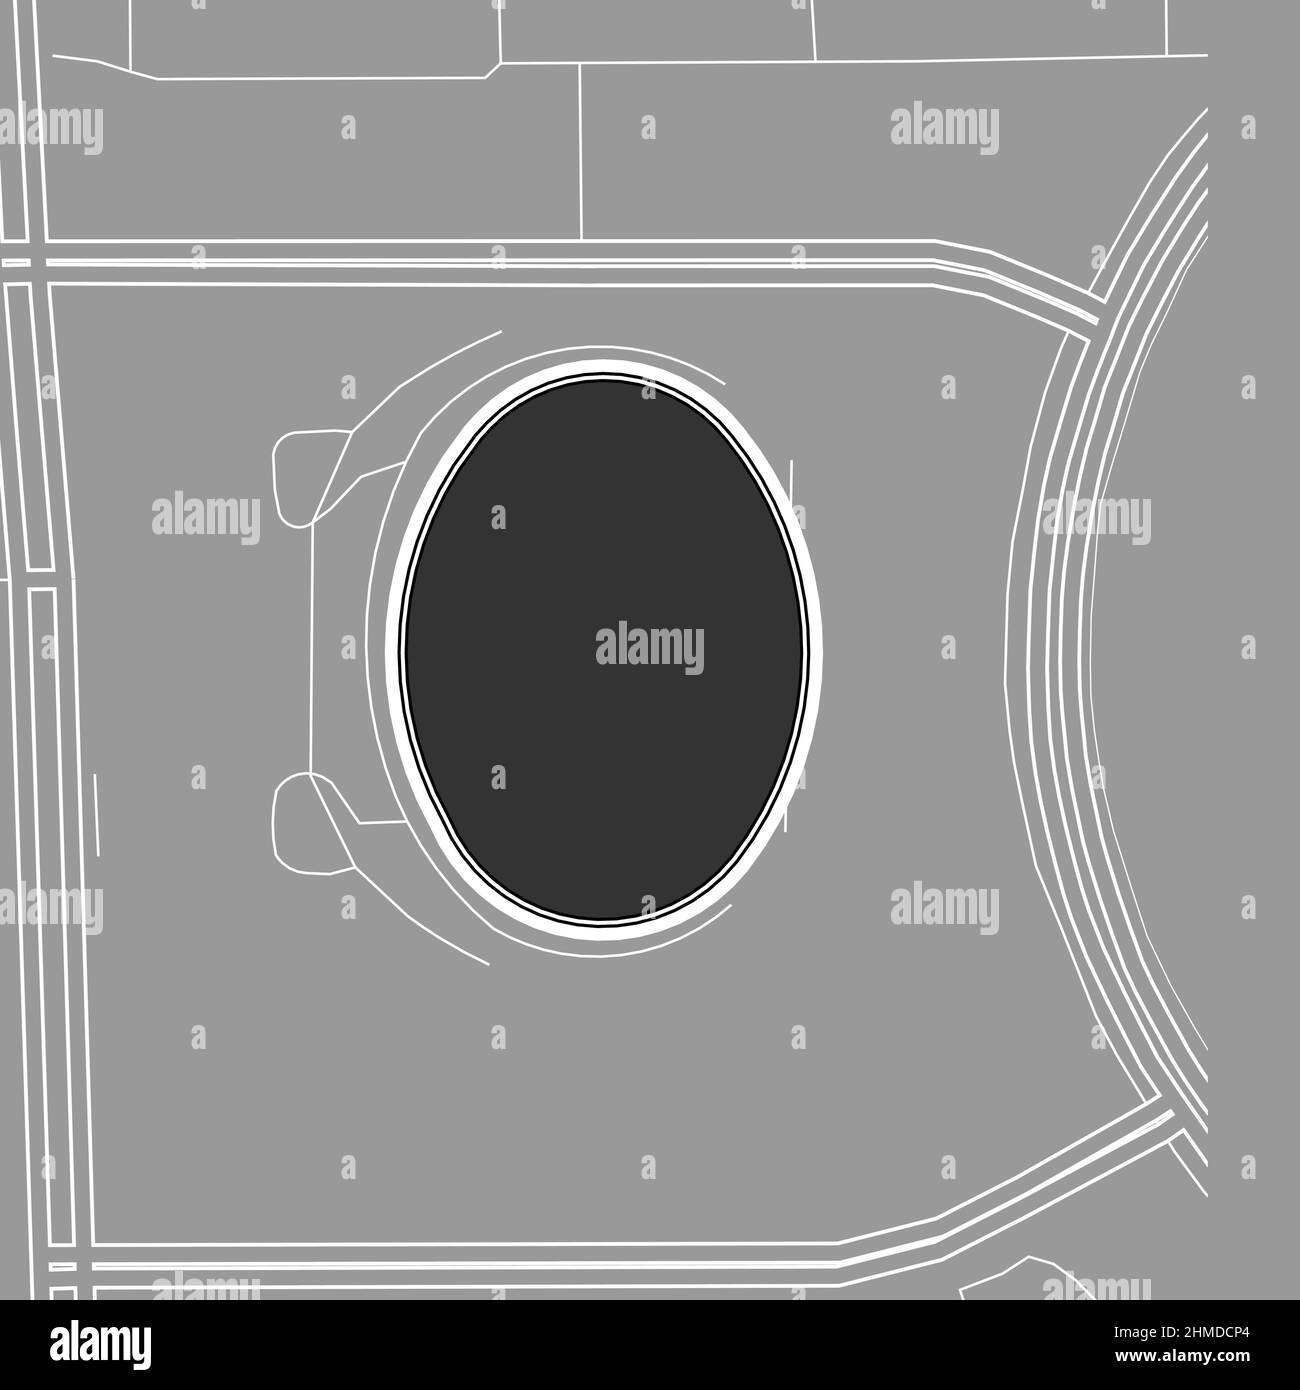 Pechino, Stadio MLB di baseball, mappa vettoriale. La mappa dello stadio di baseball è stata disegnata con aree bianche e linee per le strade principali, le strade laterali. Illustrazione Vettoriale